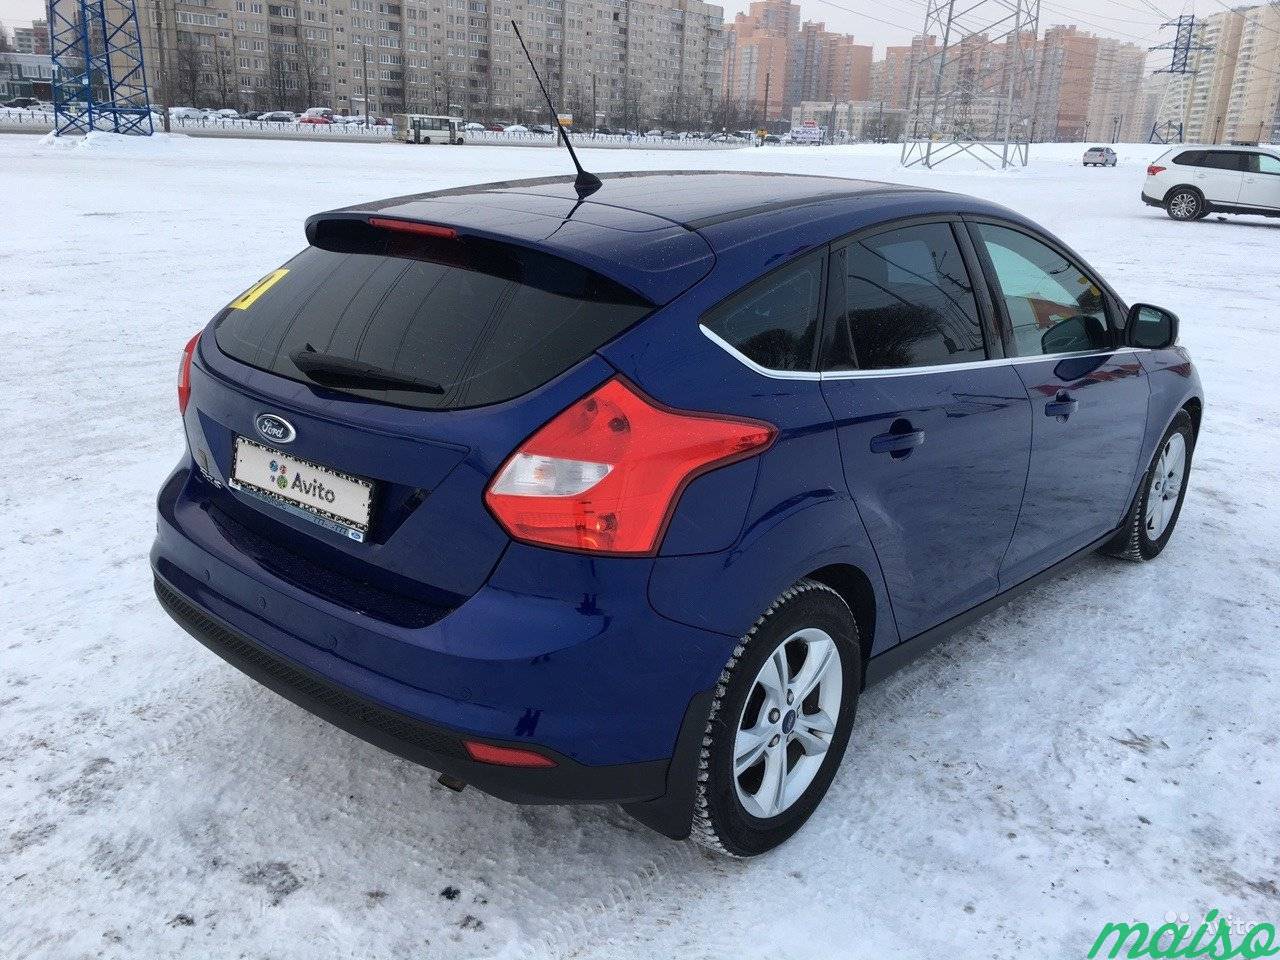 Ford Focus 1.6 AT, 2014, хетчбэк в Санкт-Петербурге. Фото 4